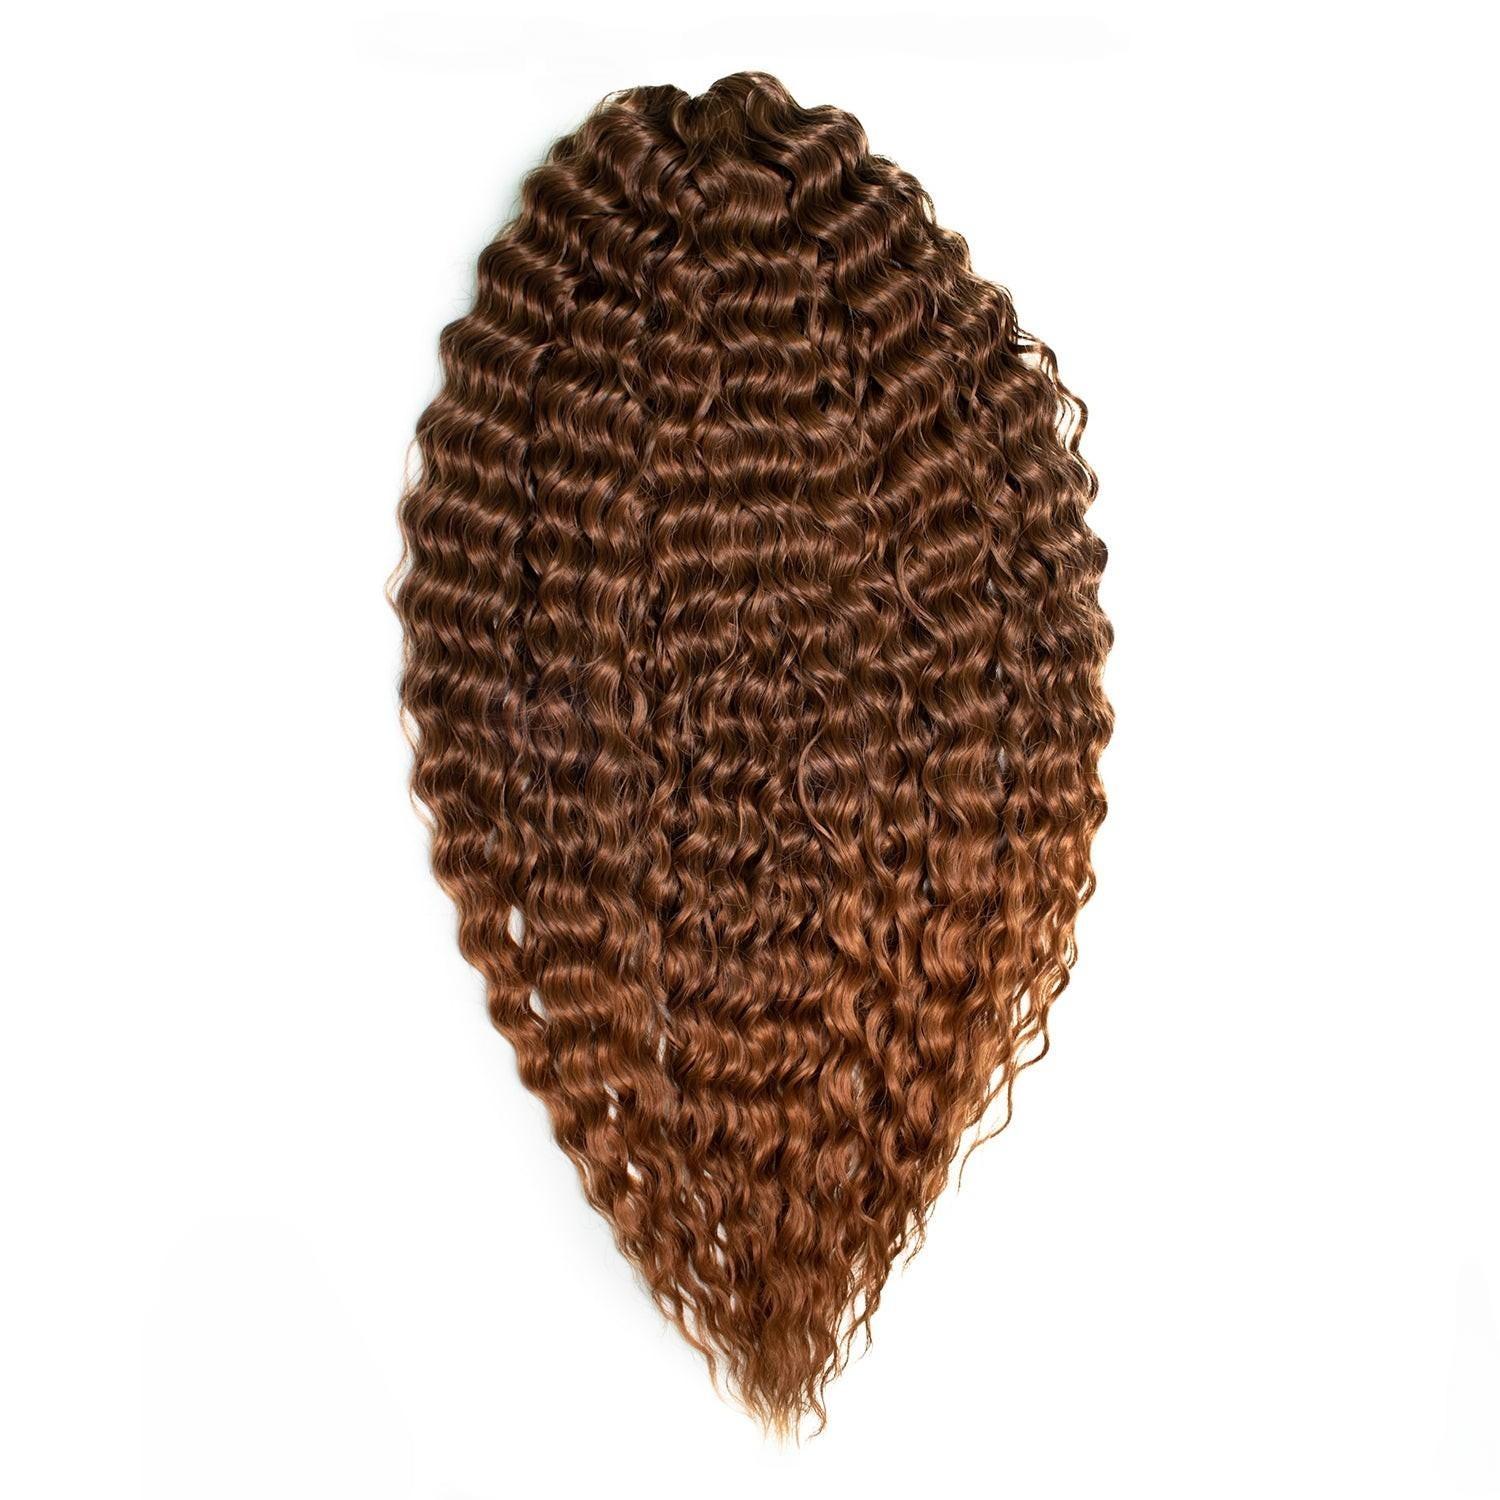 Афрокудри для плетения волос Ariel цвет T4 30 каштановый длина 60см вес 300г